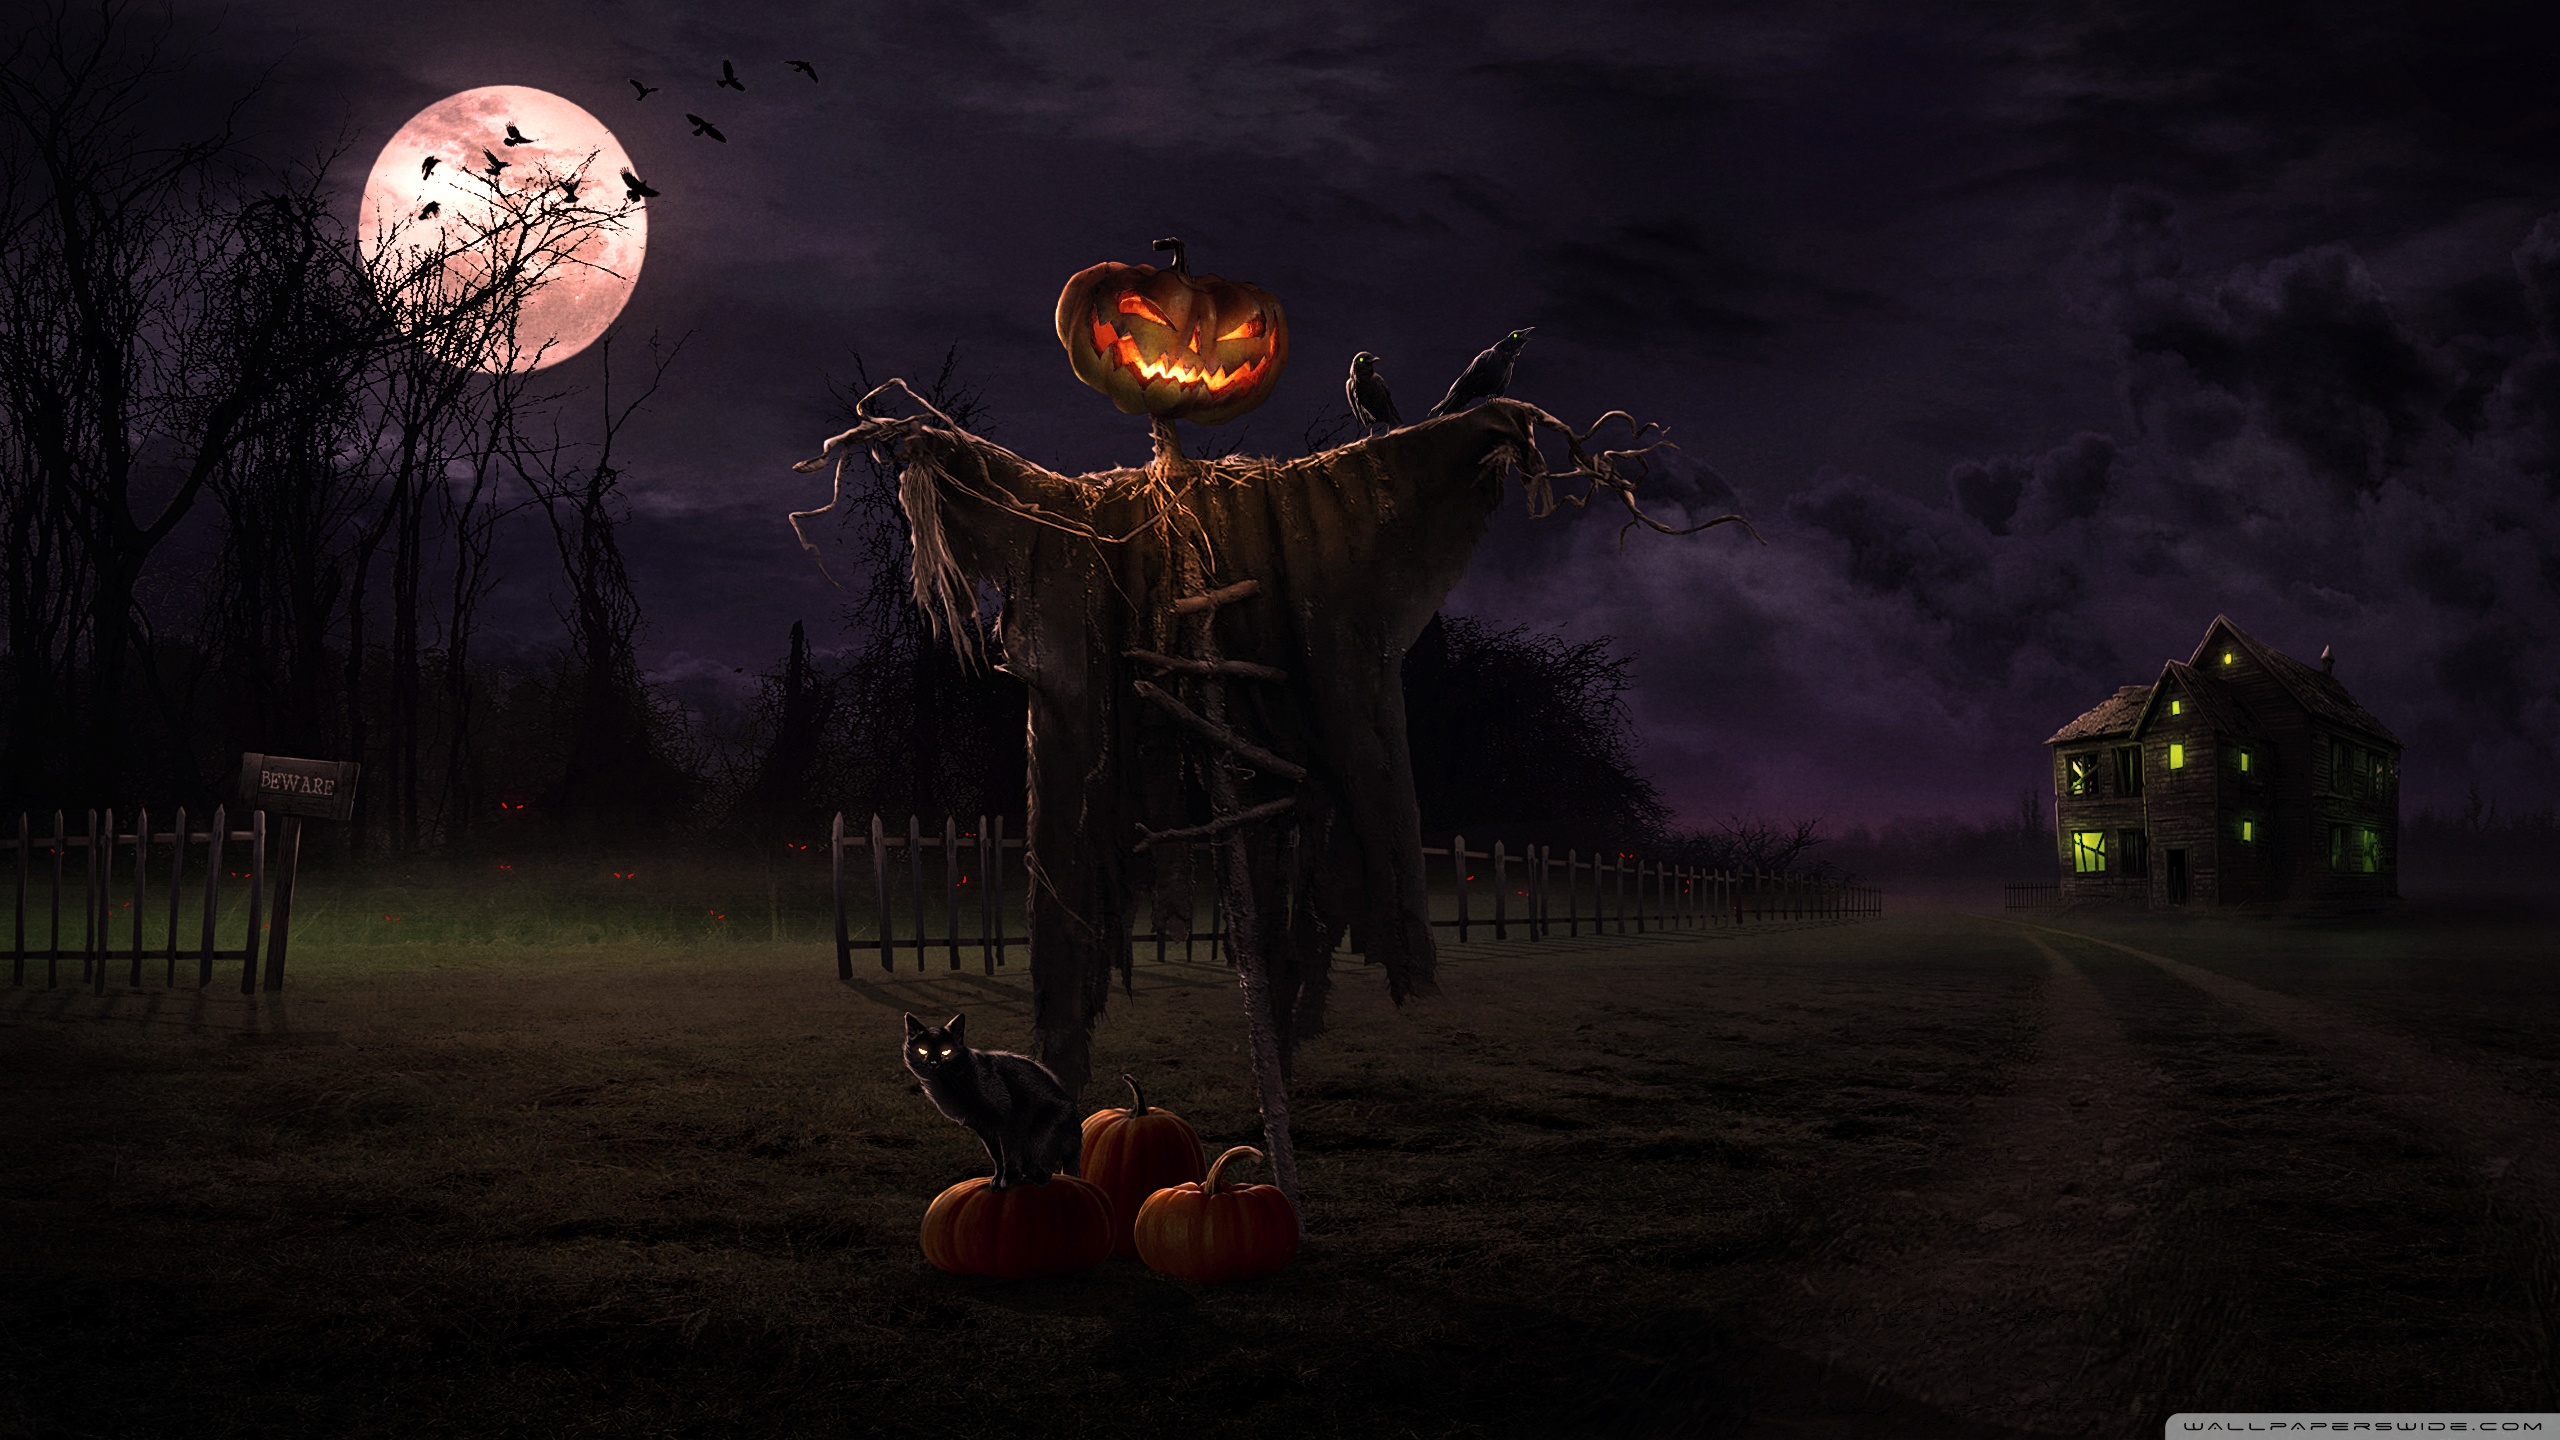 Spooky halloween backgrounds